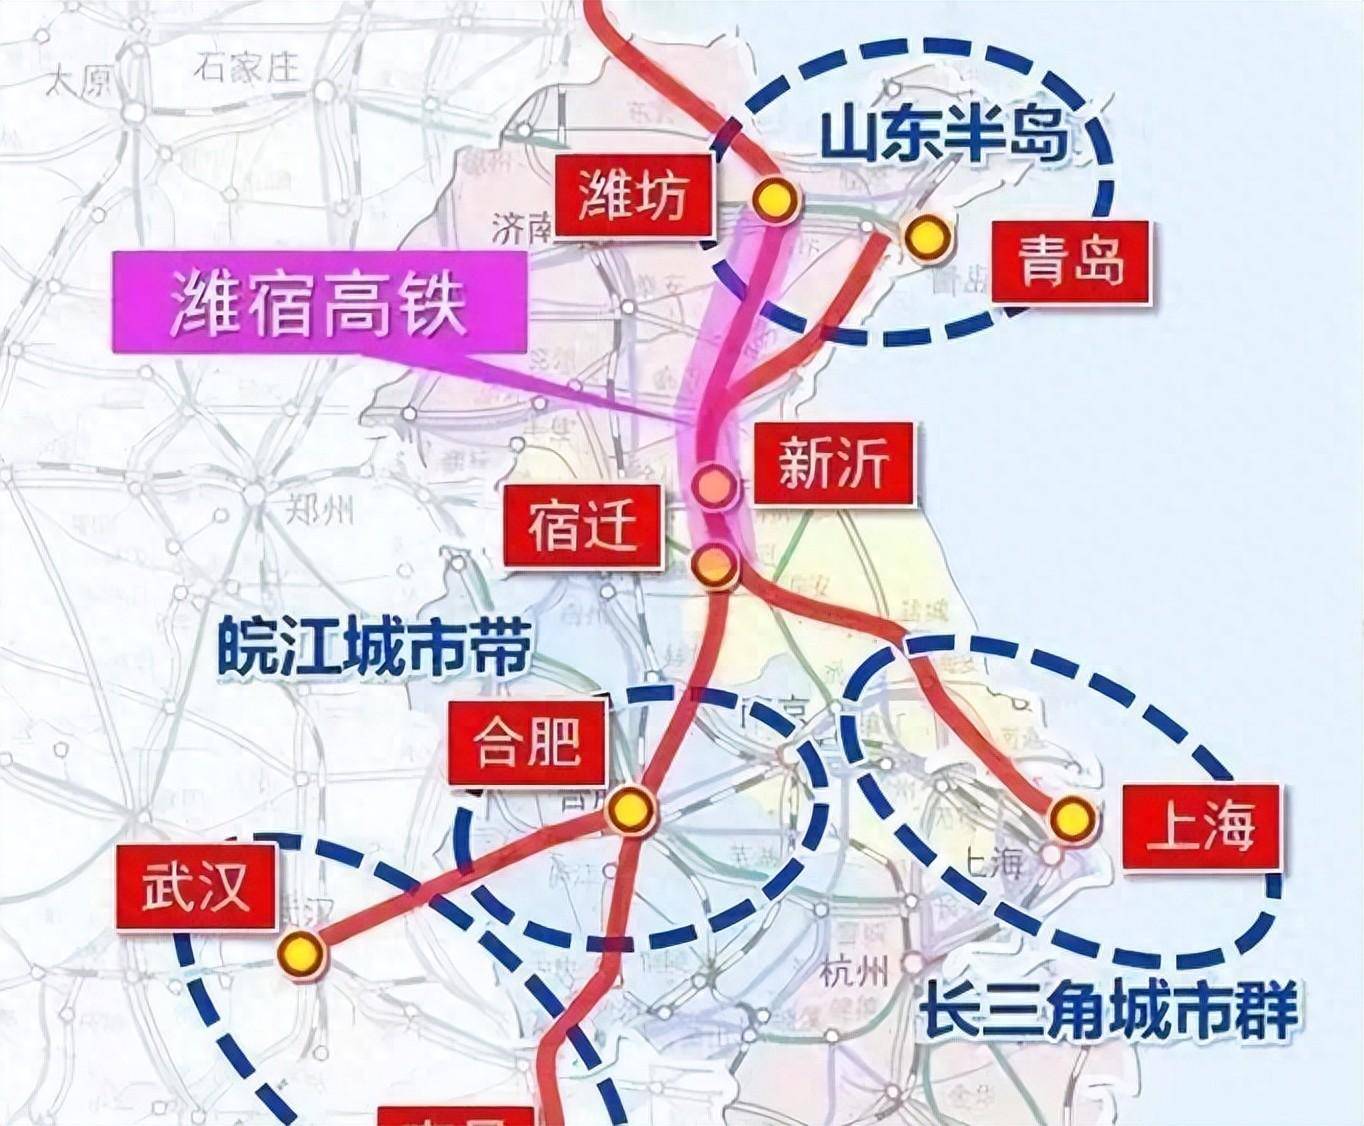 西合高铁2025规划图片